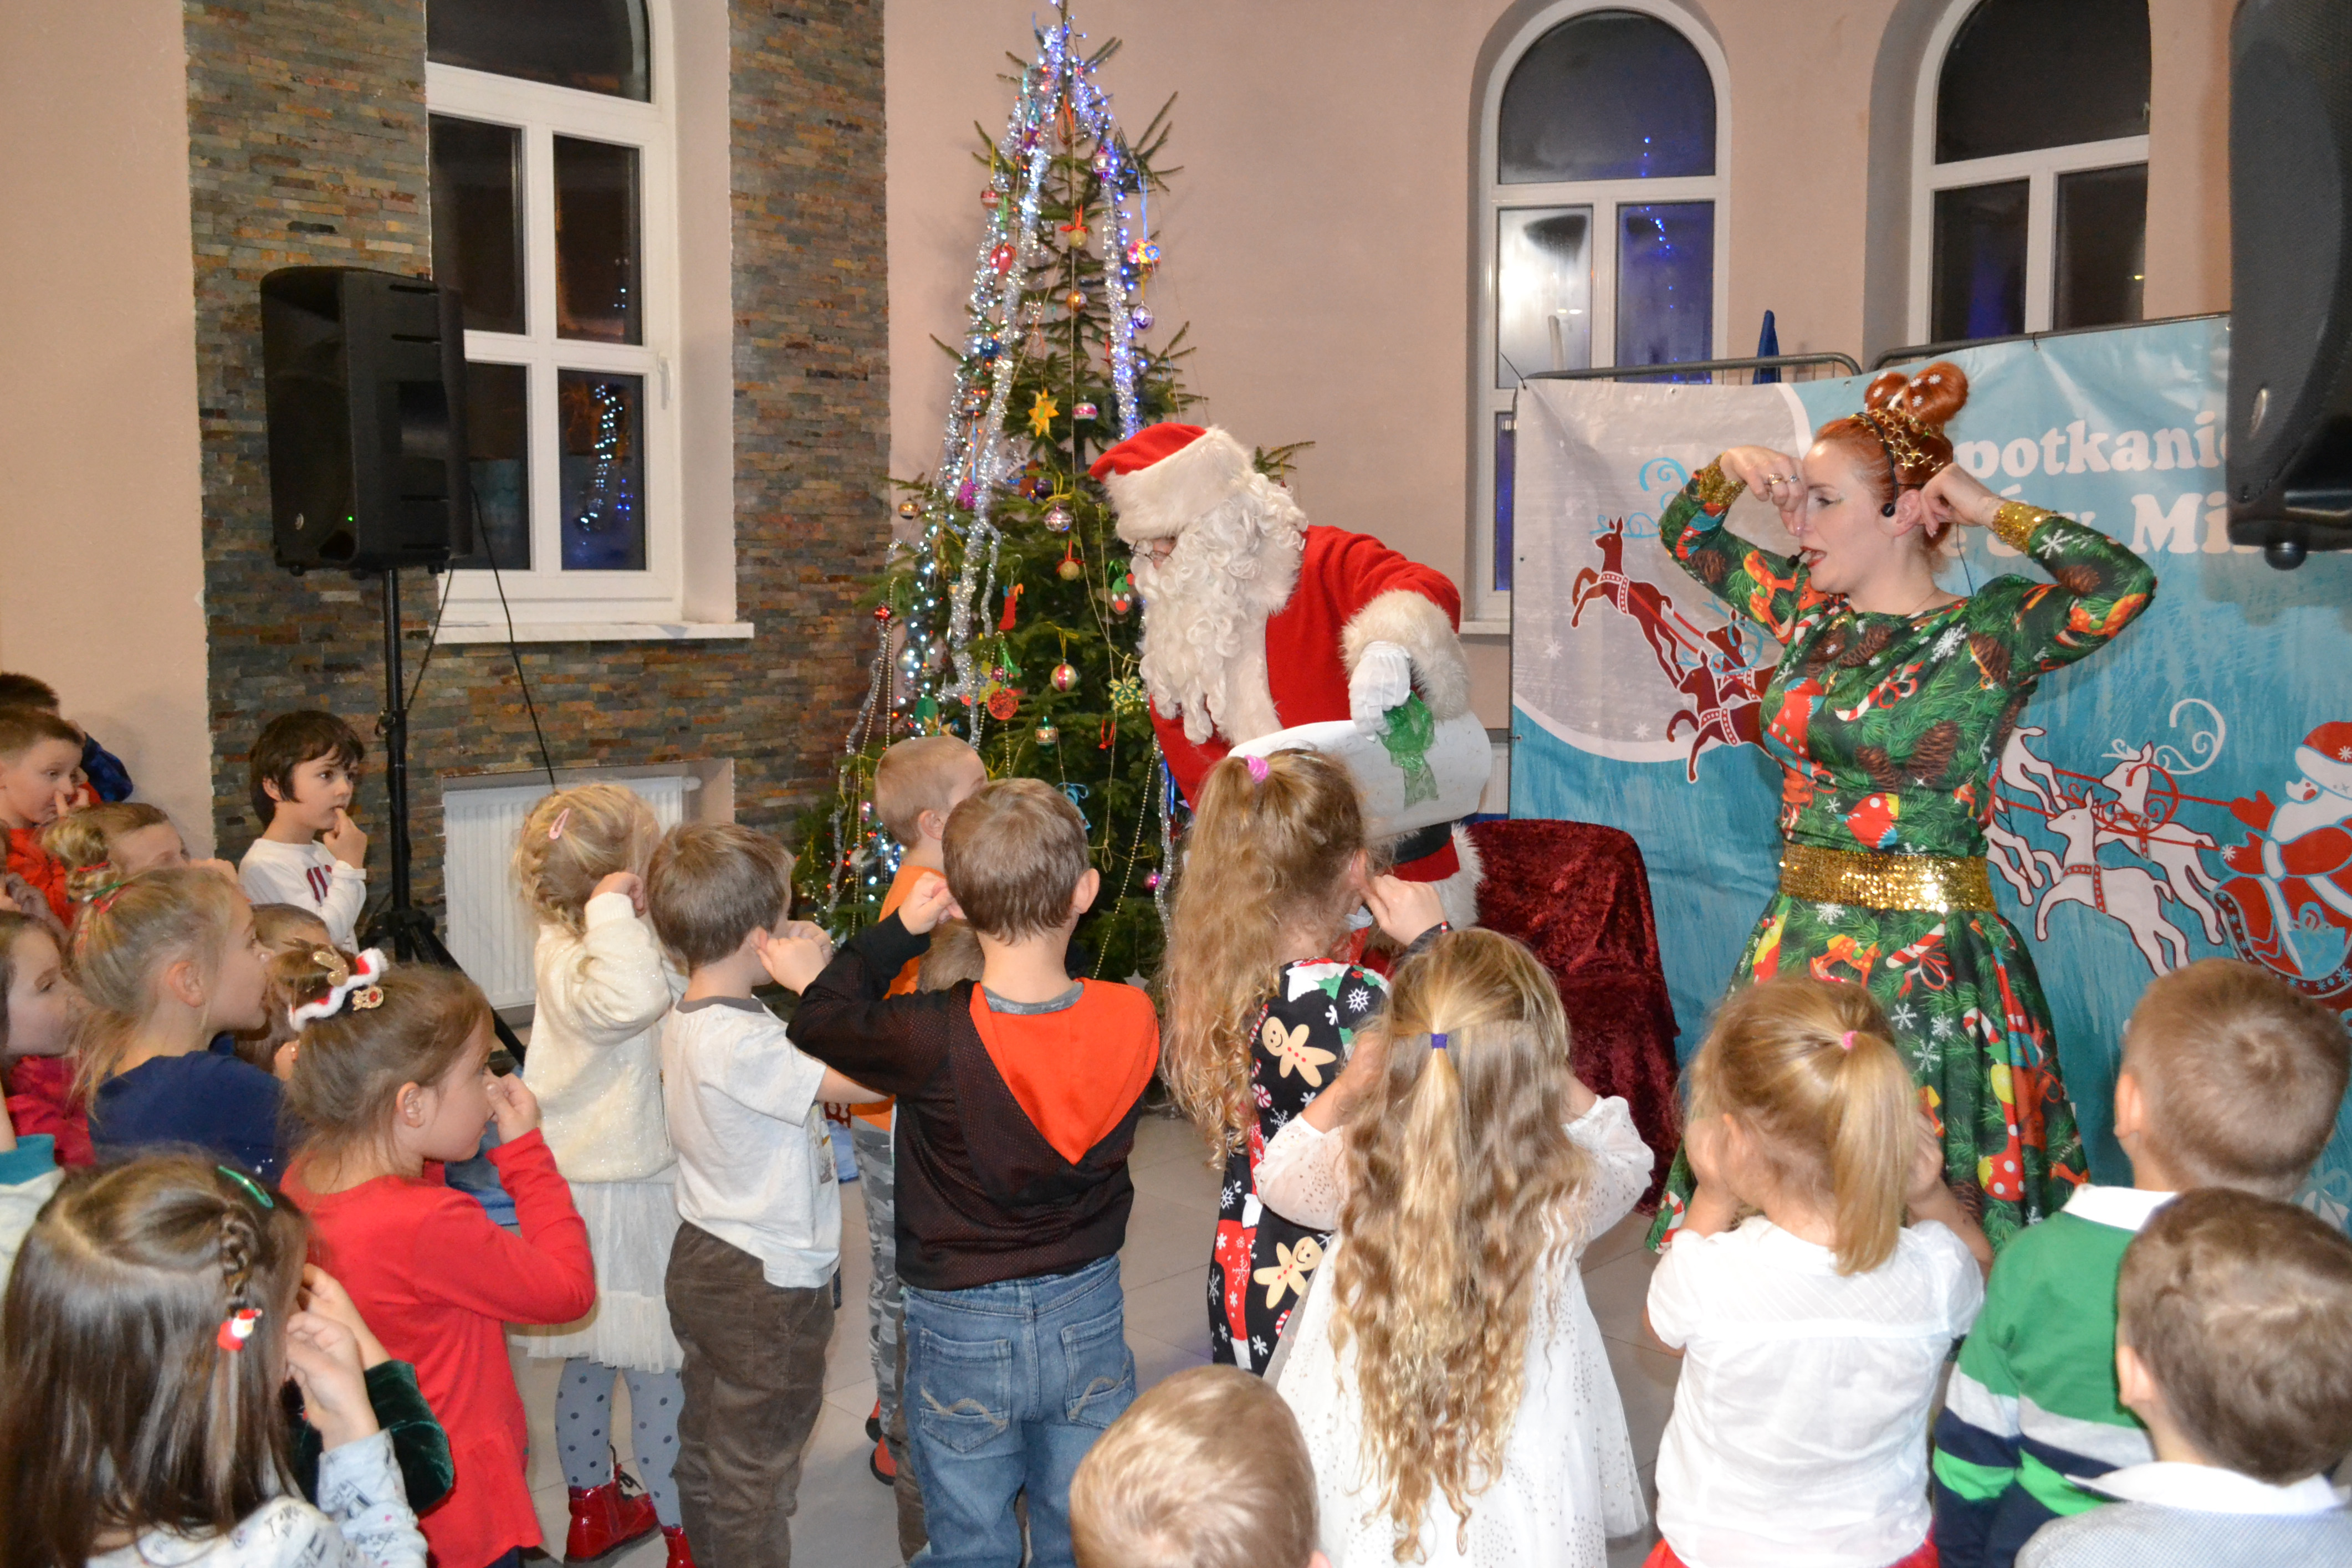 Spotkanie z Mikołajem w sali pod Goruszką, Święty Mikołaj stoi obok przystrojonej  choinki, wokół licznie zgromadzone dzieci